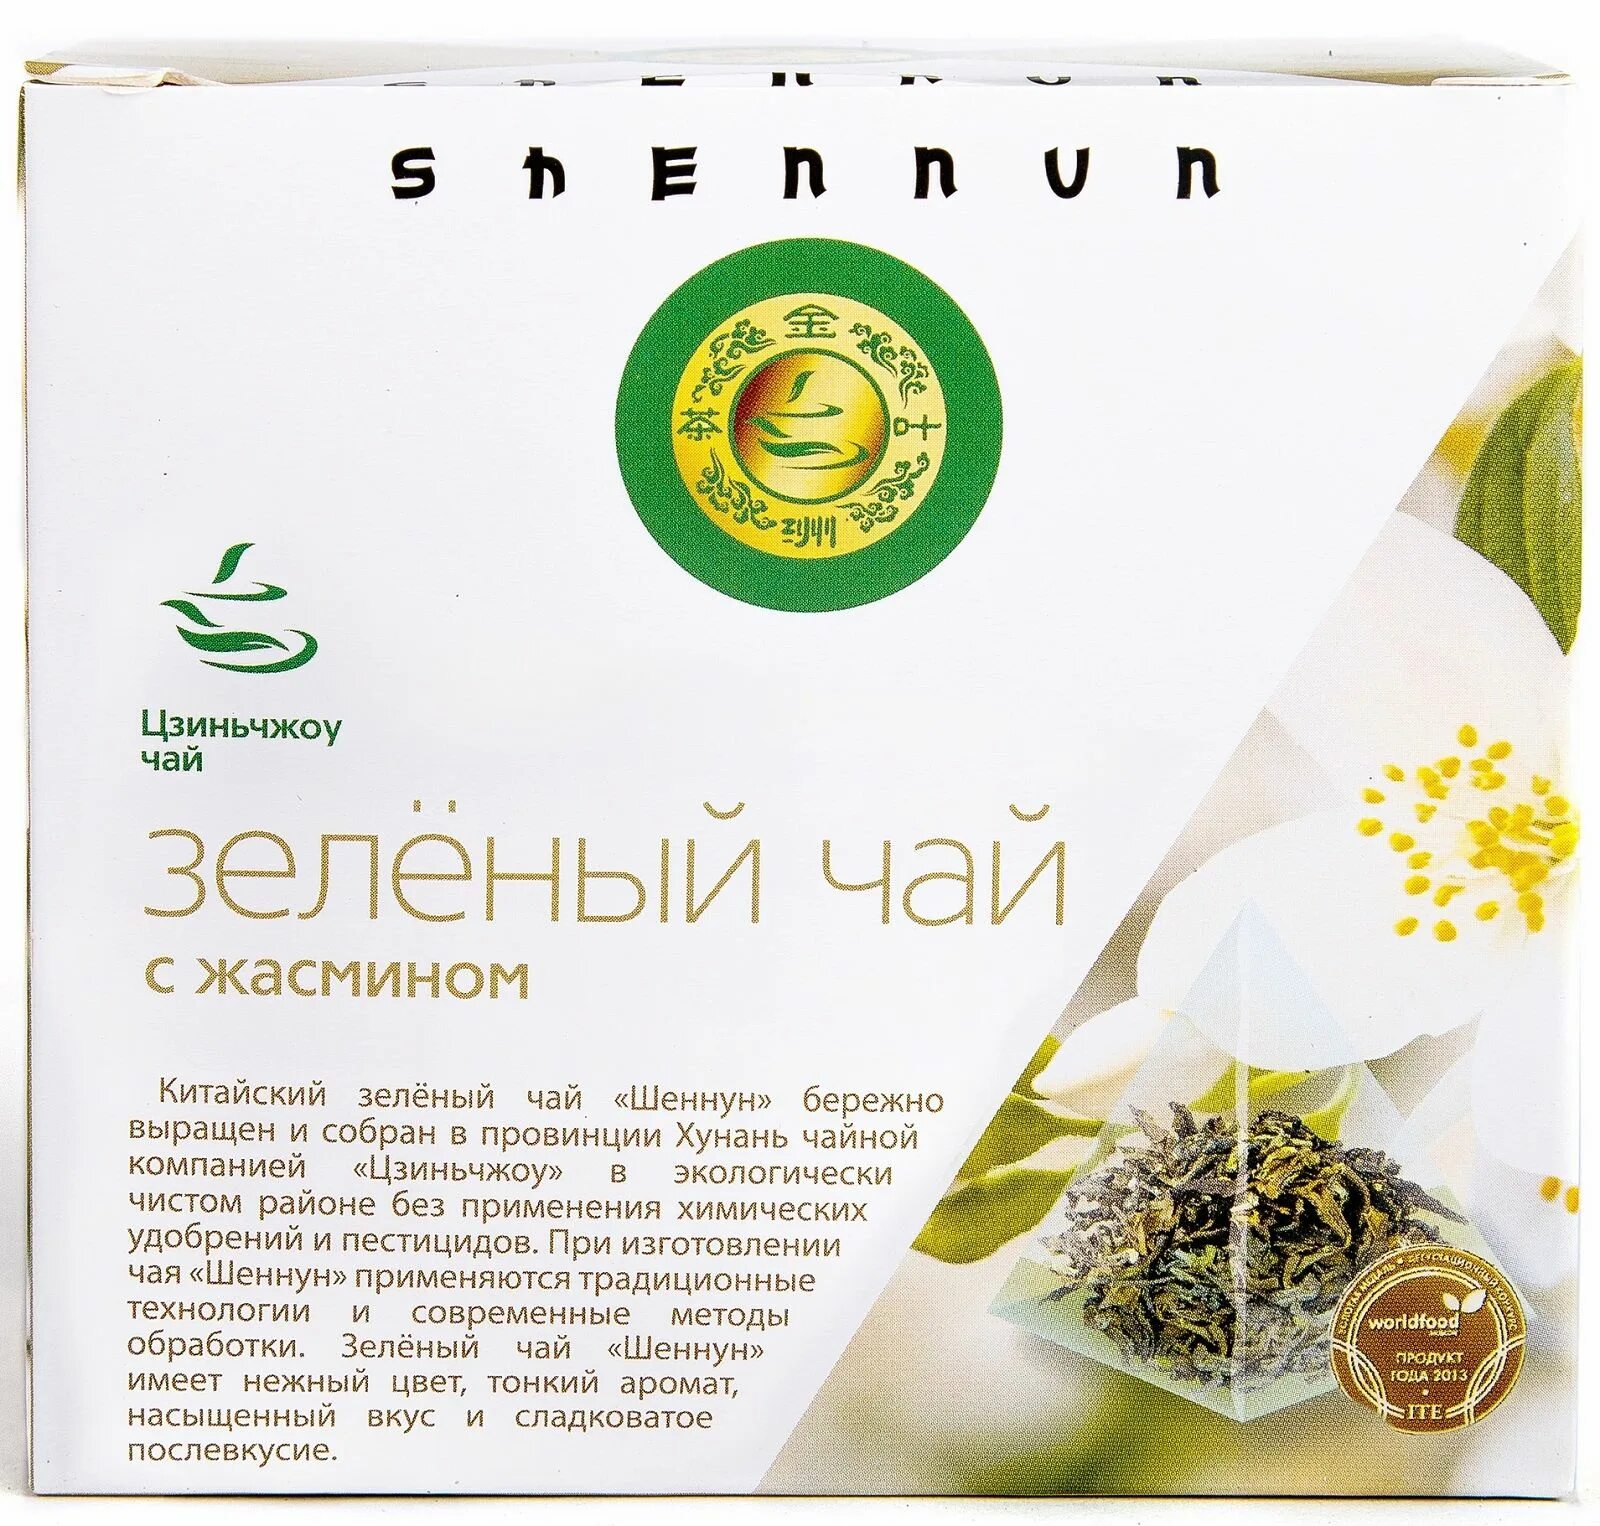 Зеленый чай с жасмином купить. Чай улун Shennun с жасмином. Чай Шенун зеленый. Чай с жасмином в пирамидках. Зеленый чай с жасмином.